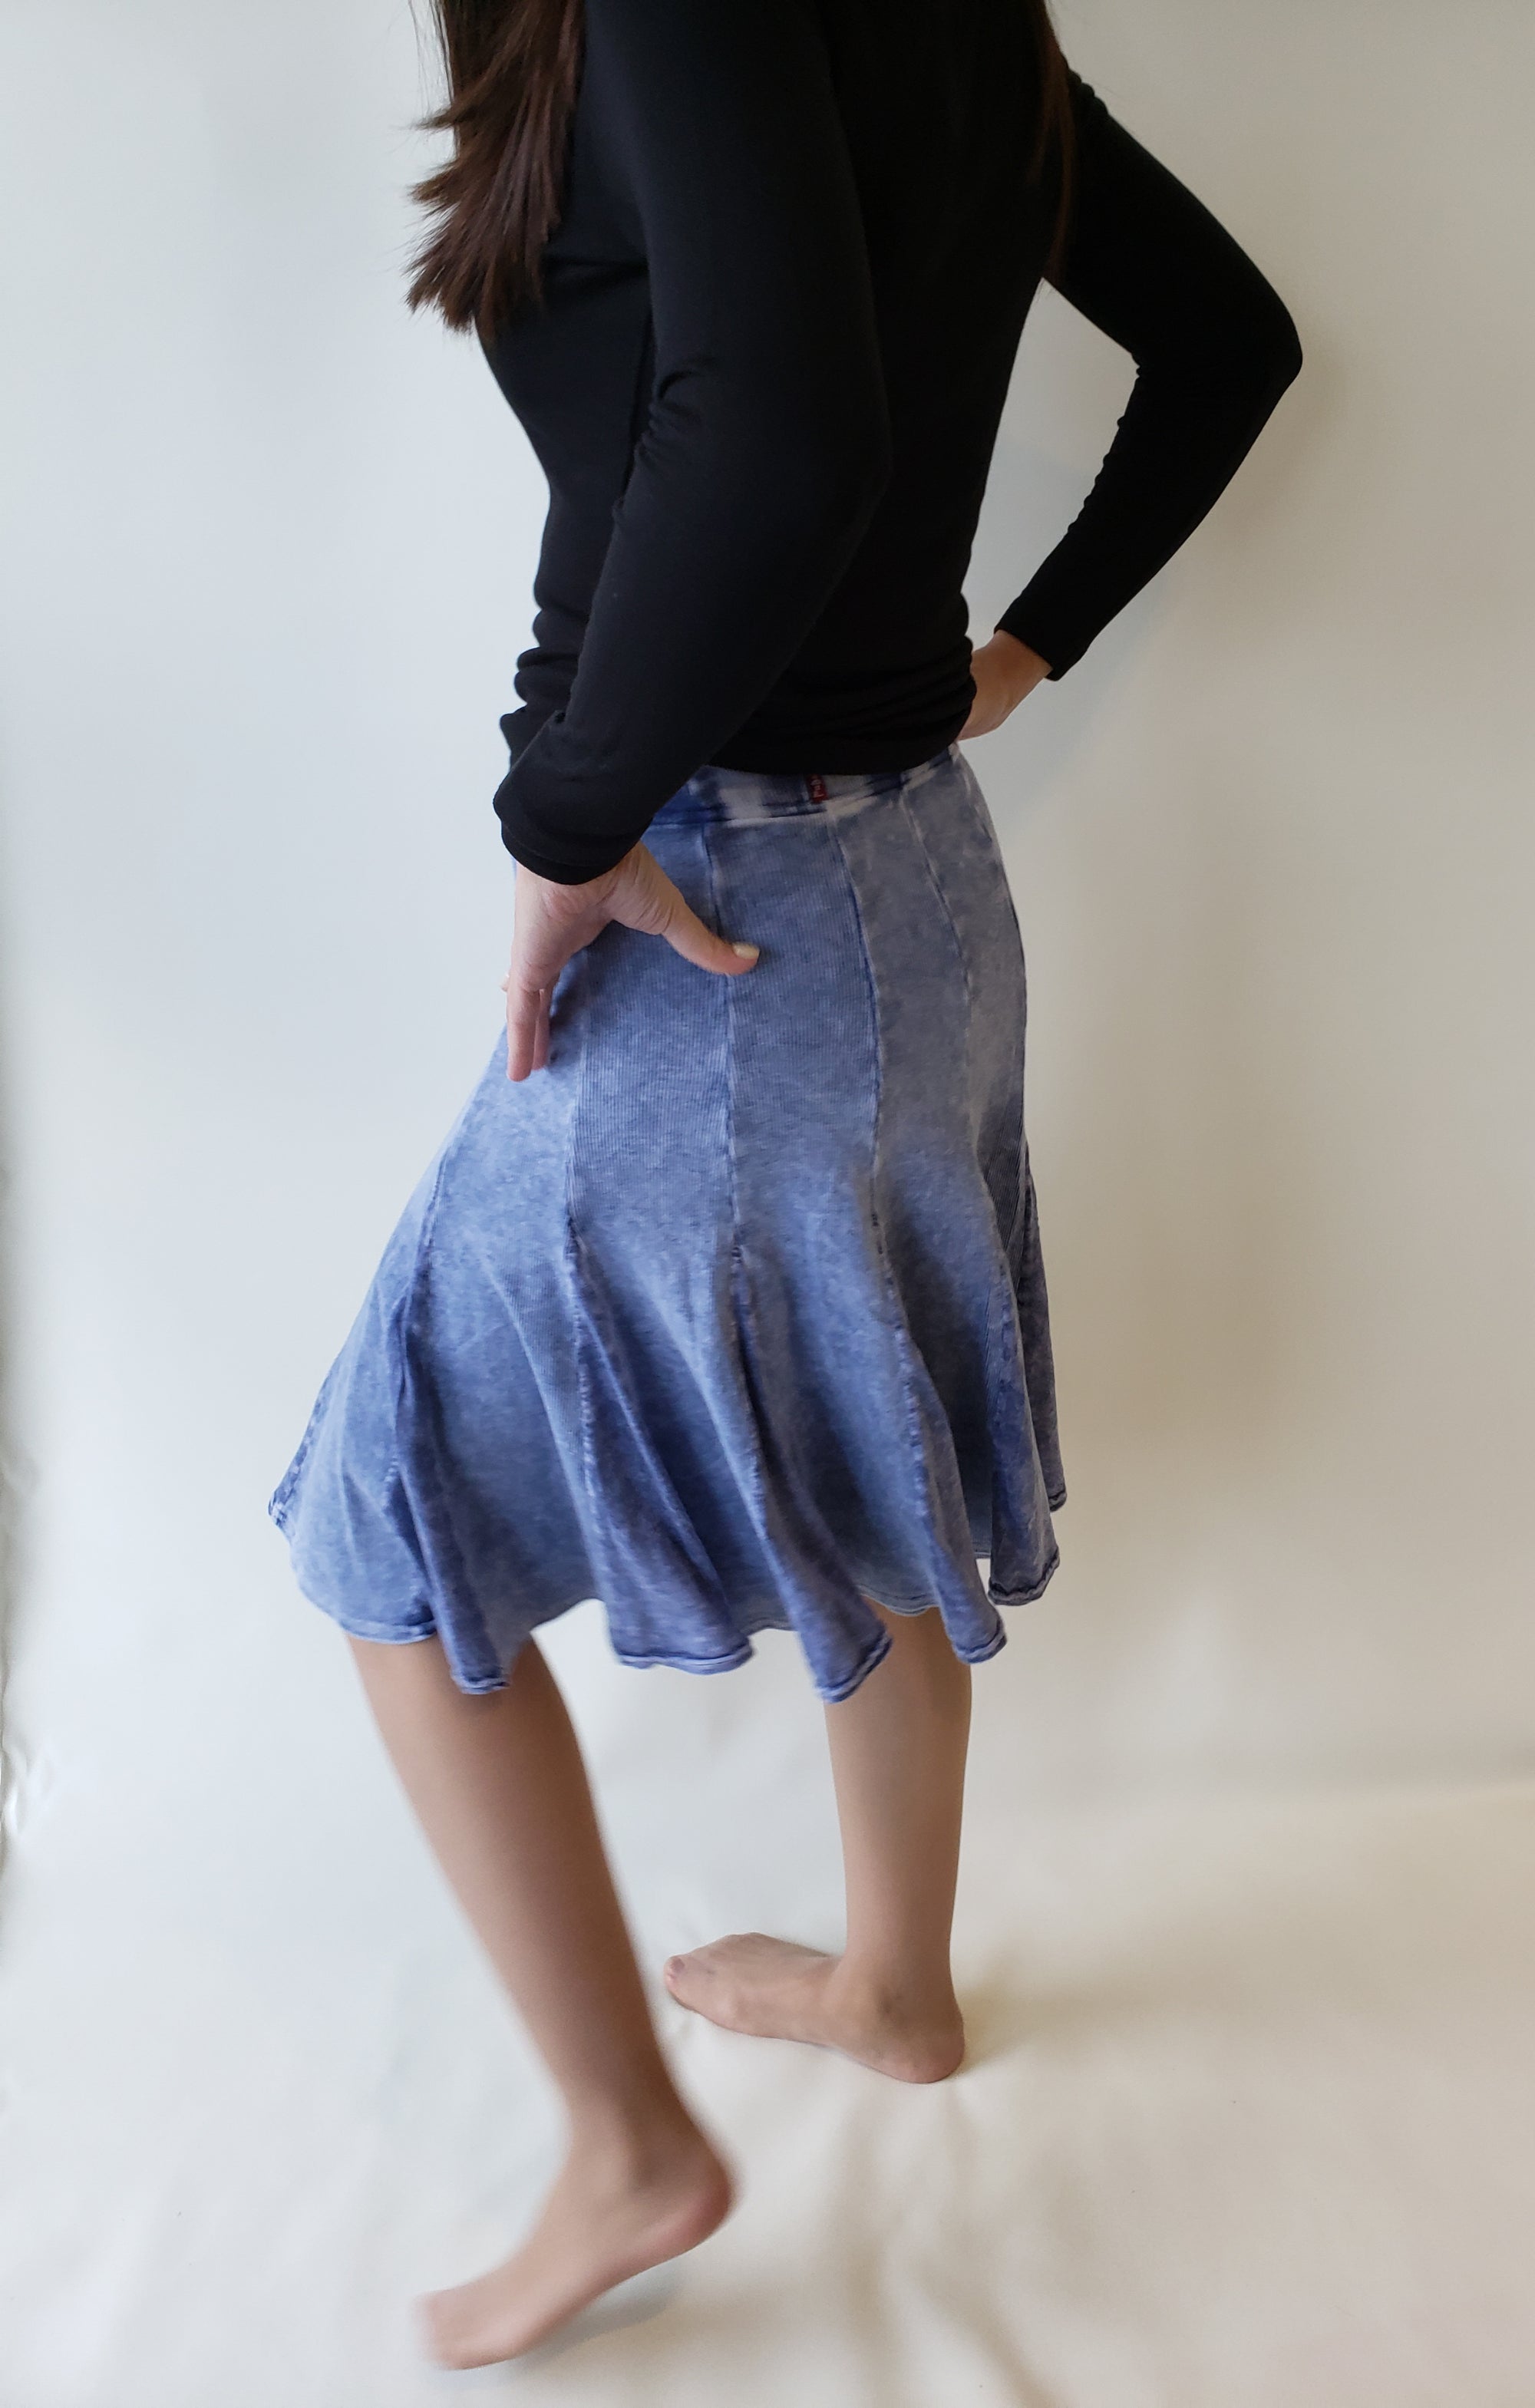 Hardtail Velour Flair Skirt V-127